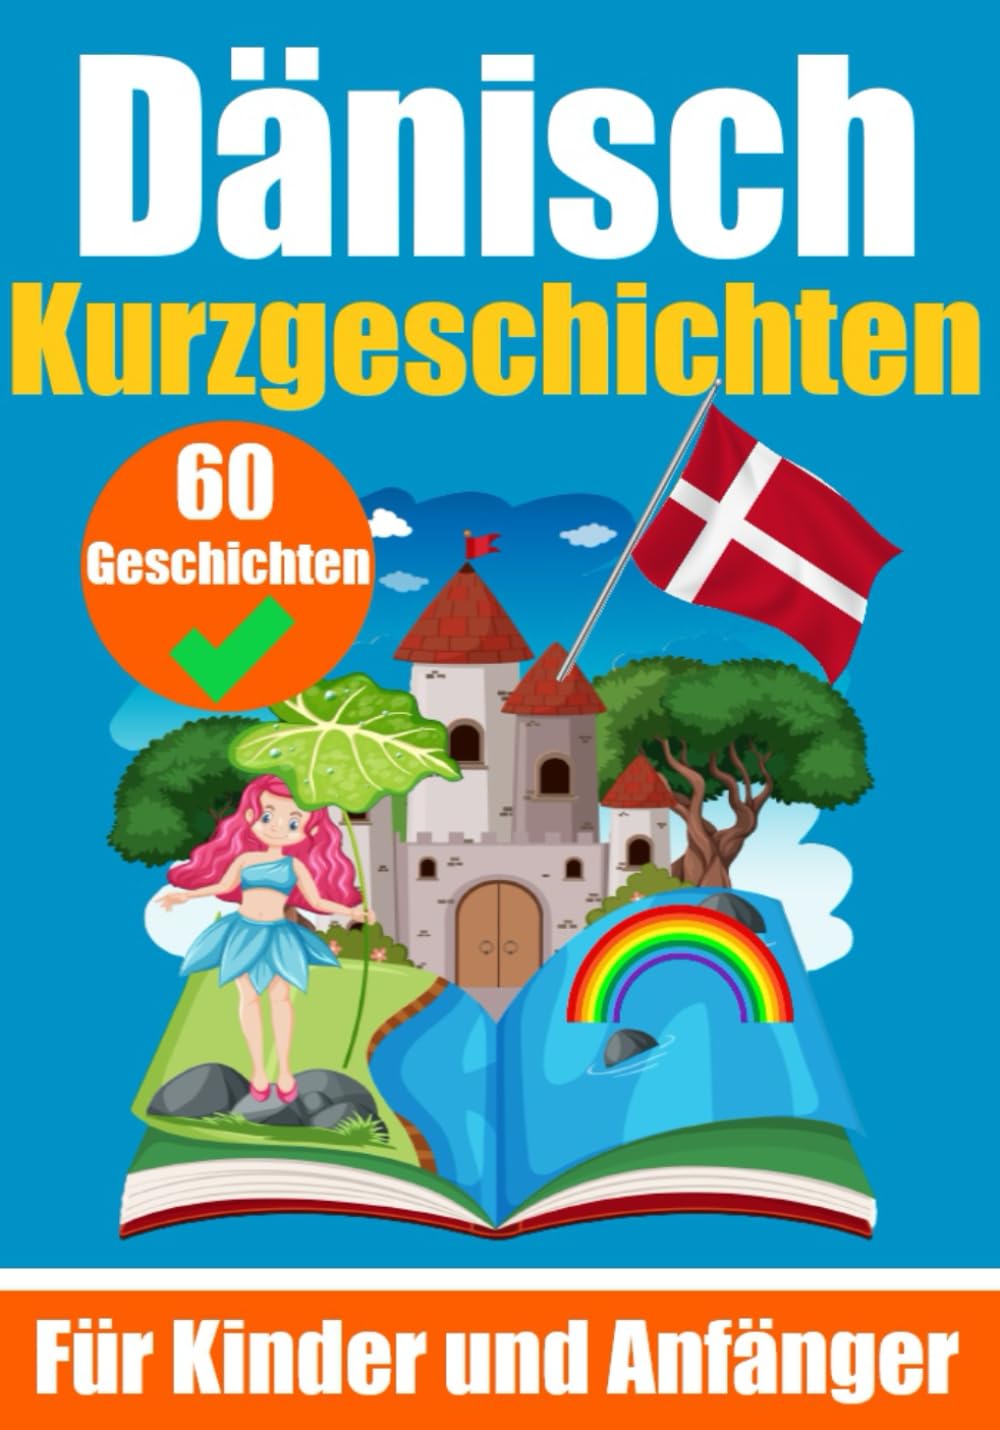 60 Kurzgeschichten auf Dänisch | Für Kinder und Anfänger - Skriuwer.com